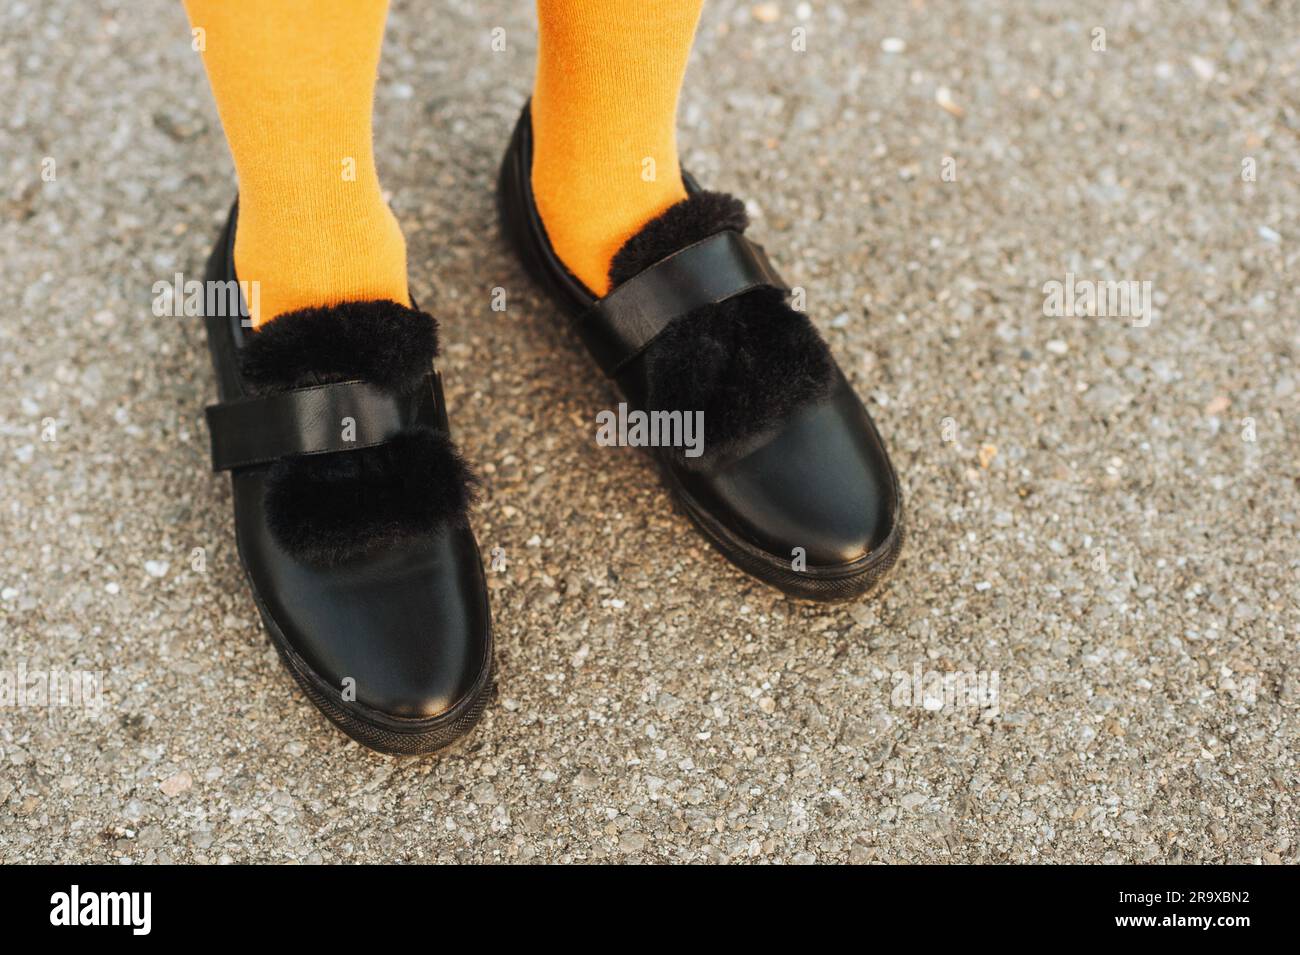 Zapatos de cuero de correa negra con piel sintética medias amarillas en los pies niña Fotografía de stock -